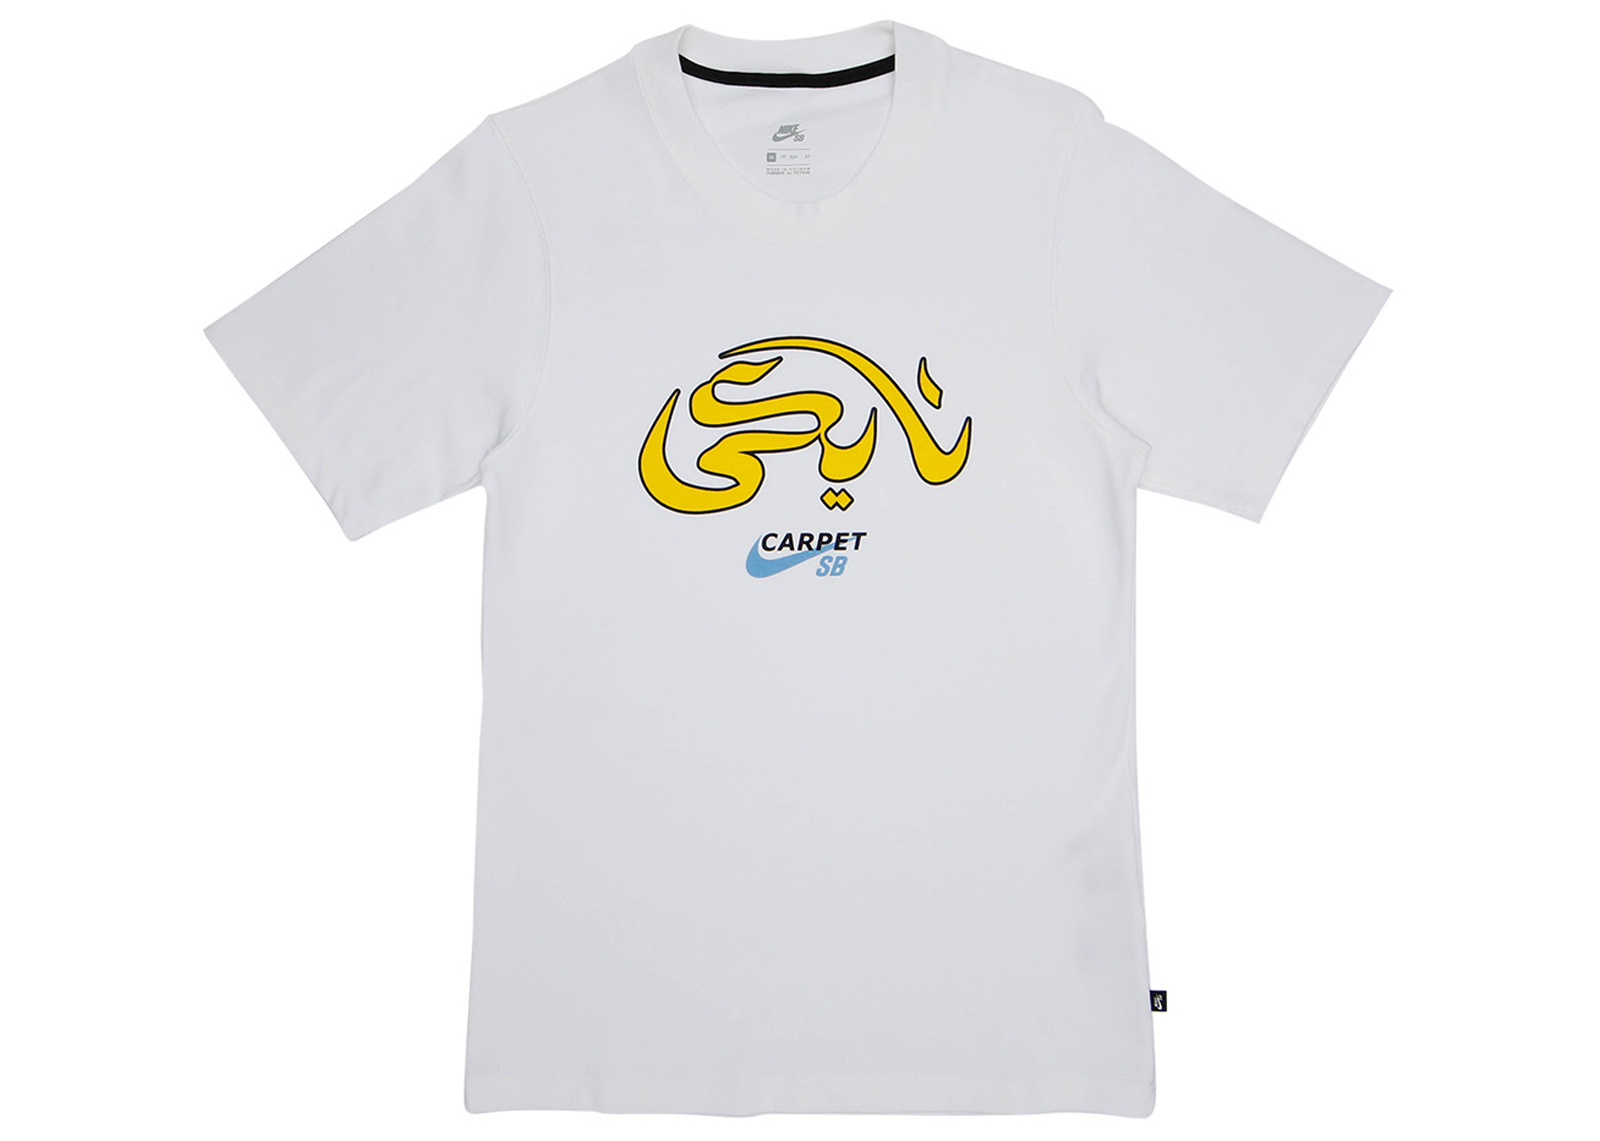 Nike SB x Carpet Company T-shirt White Men's - SS21 - US